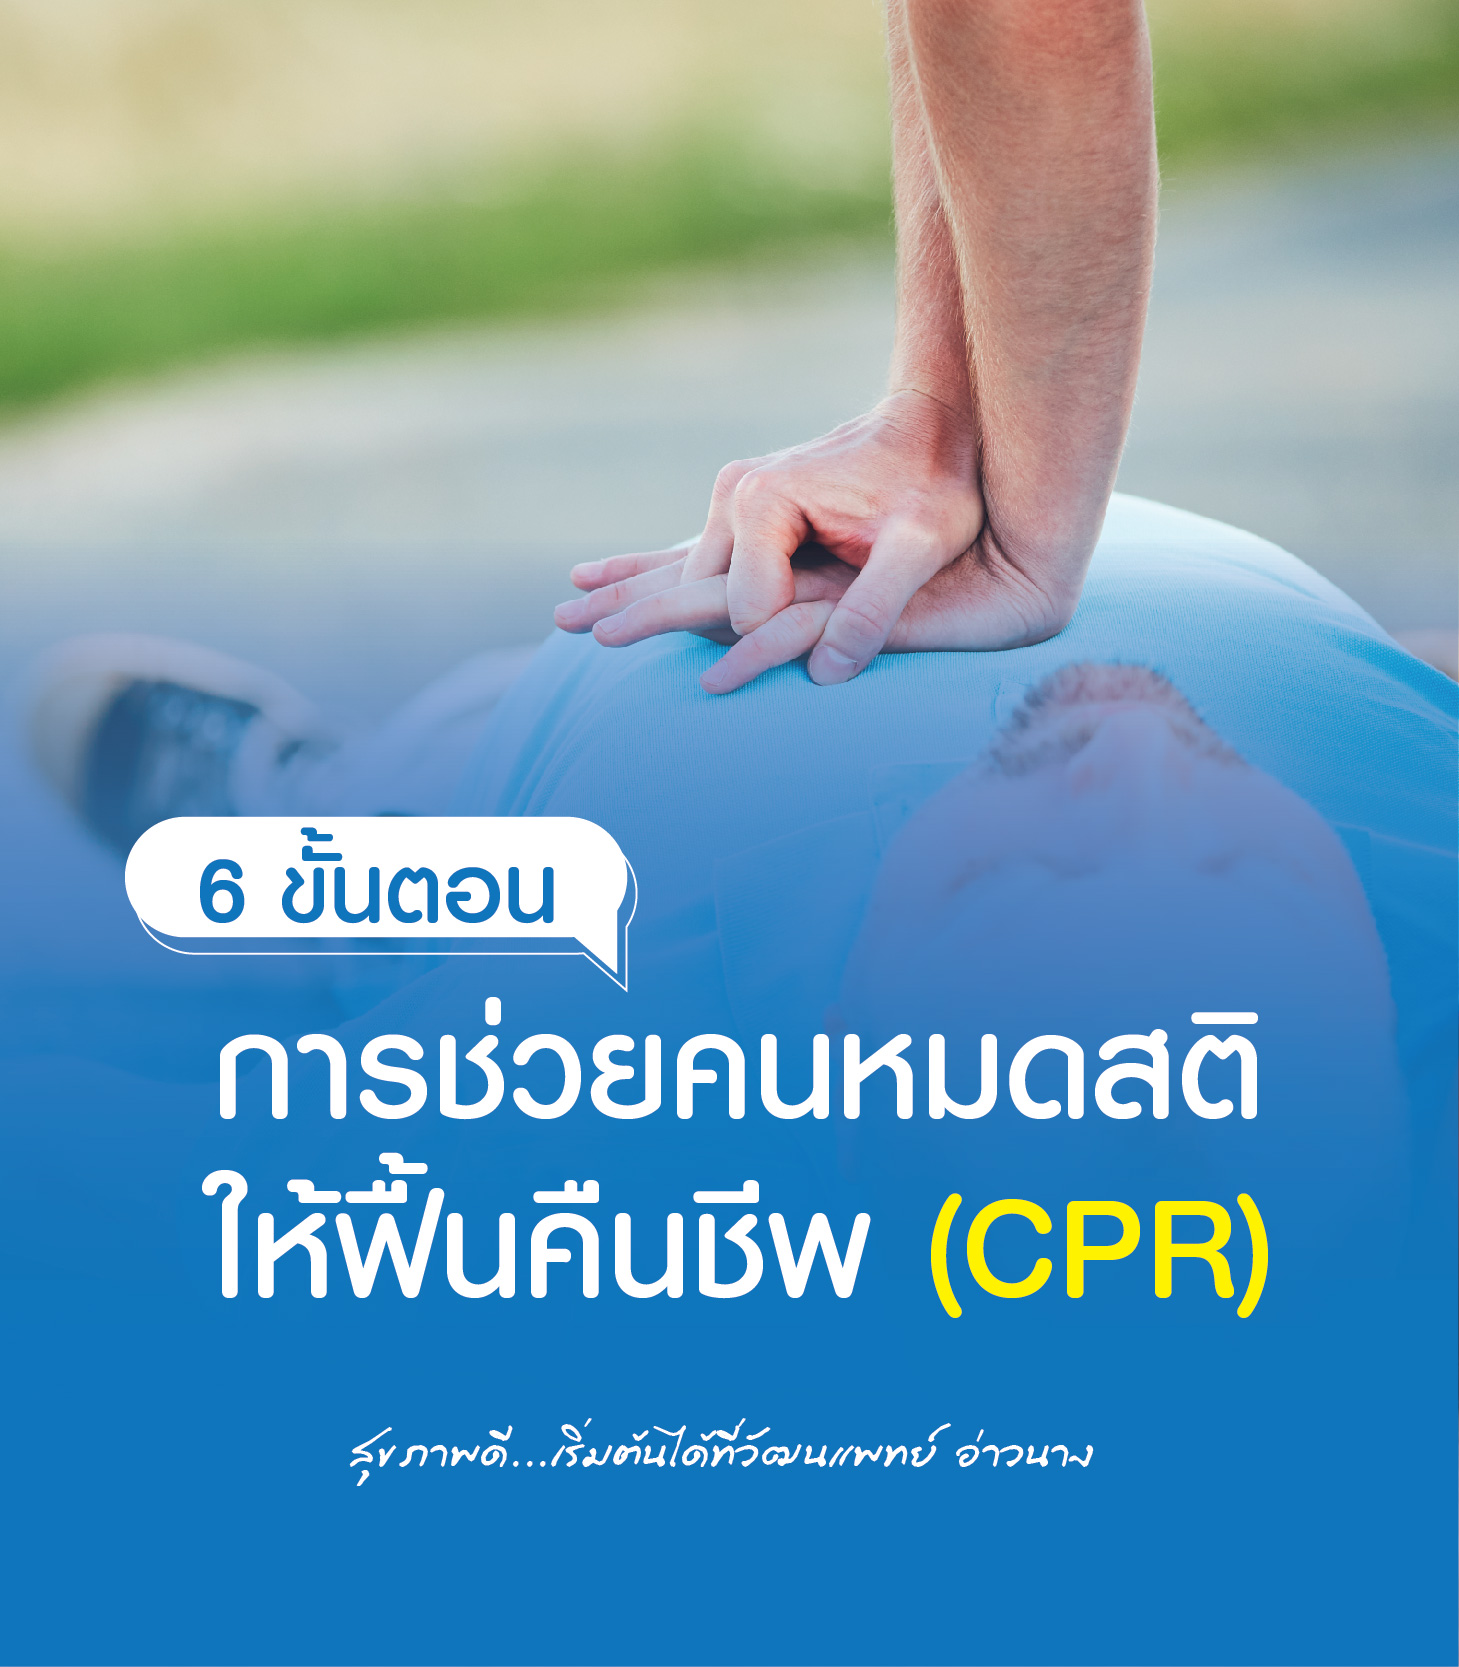 6 ขั้นตอนการช่วยคนหมดสติให้ฟื้นคืนชีพ (CPR)